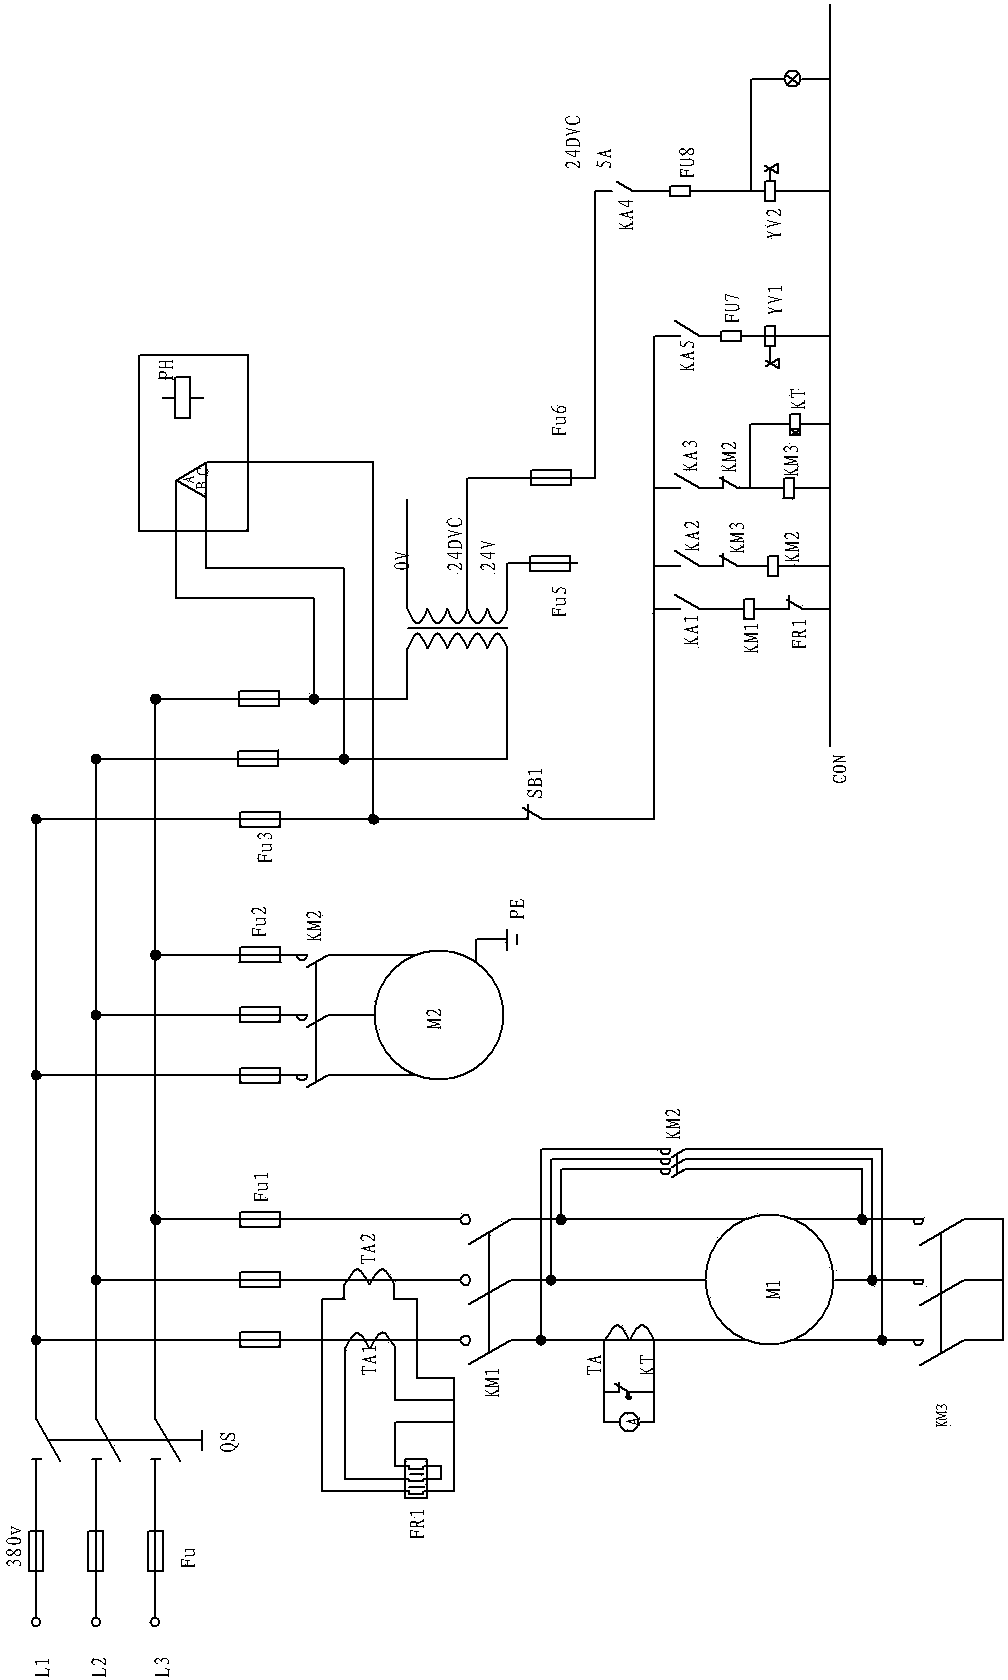 Air compressor control system